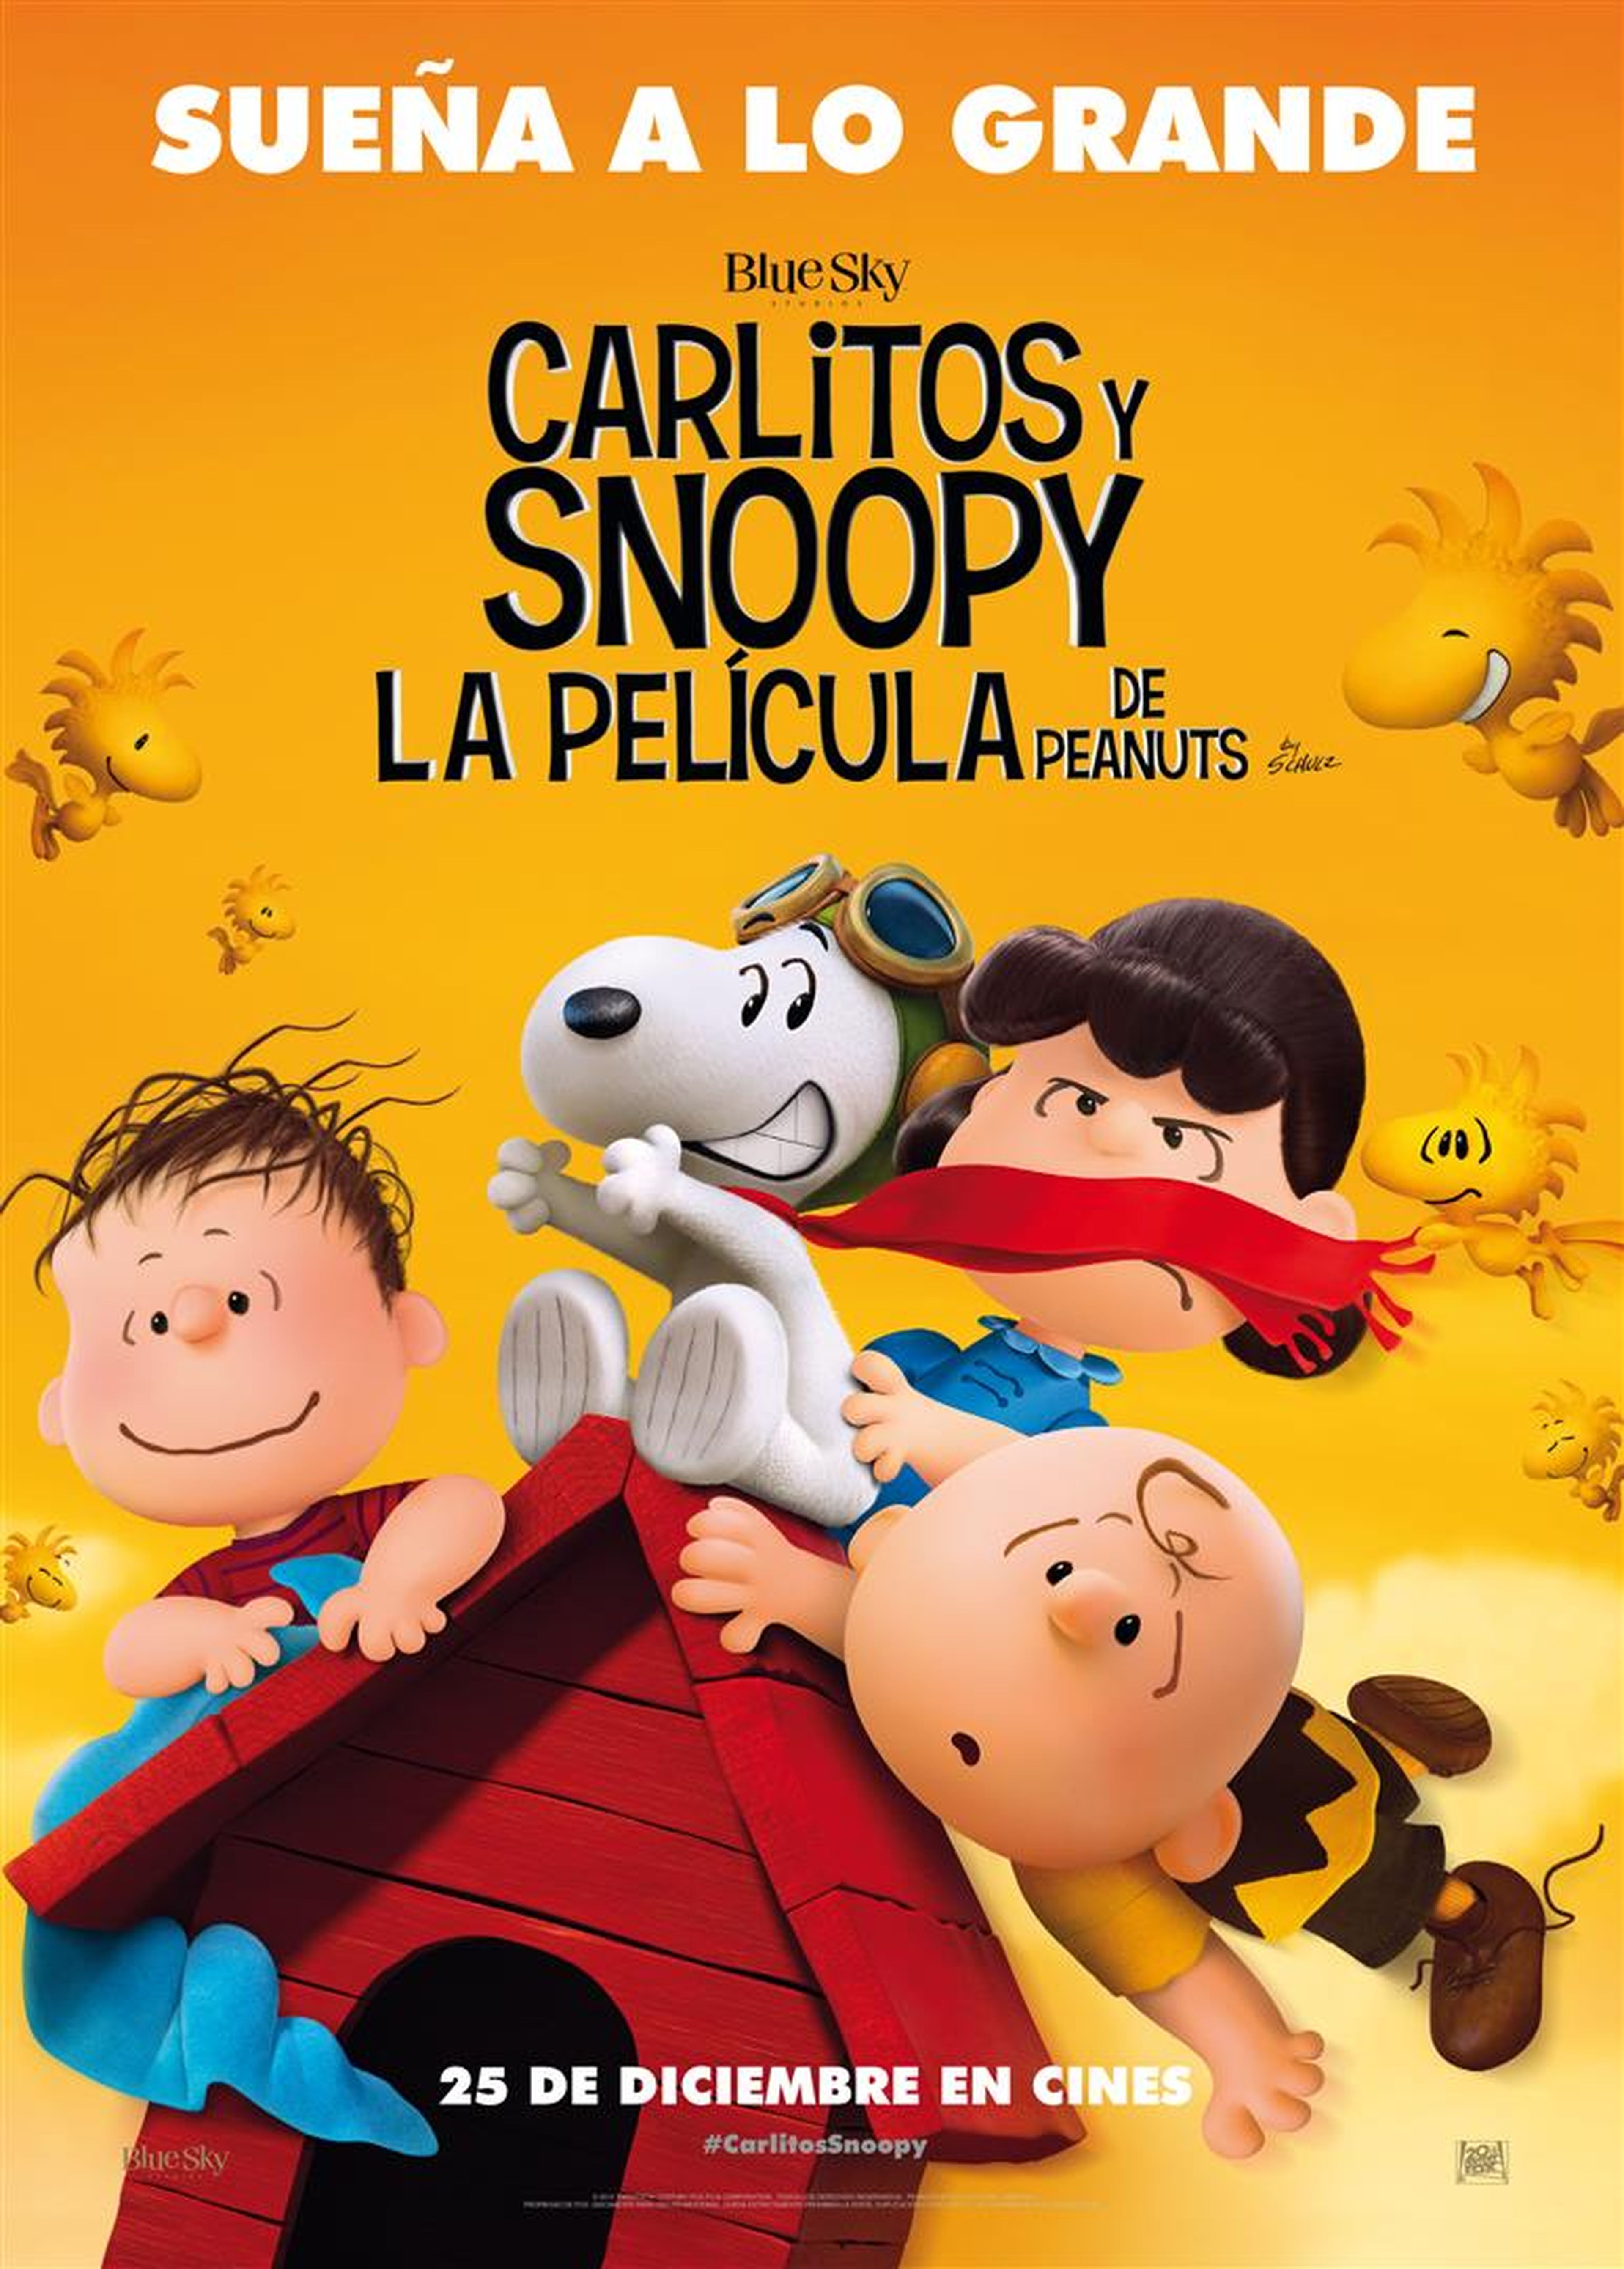 Clip en primicia de Carlitos y Snoopy: la película de Peanuts